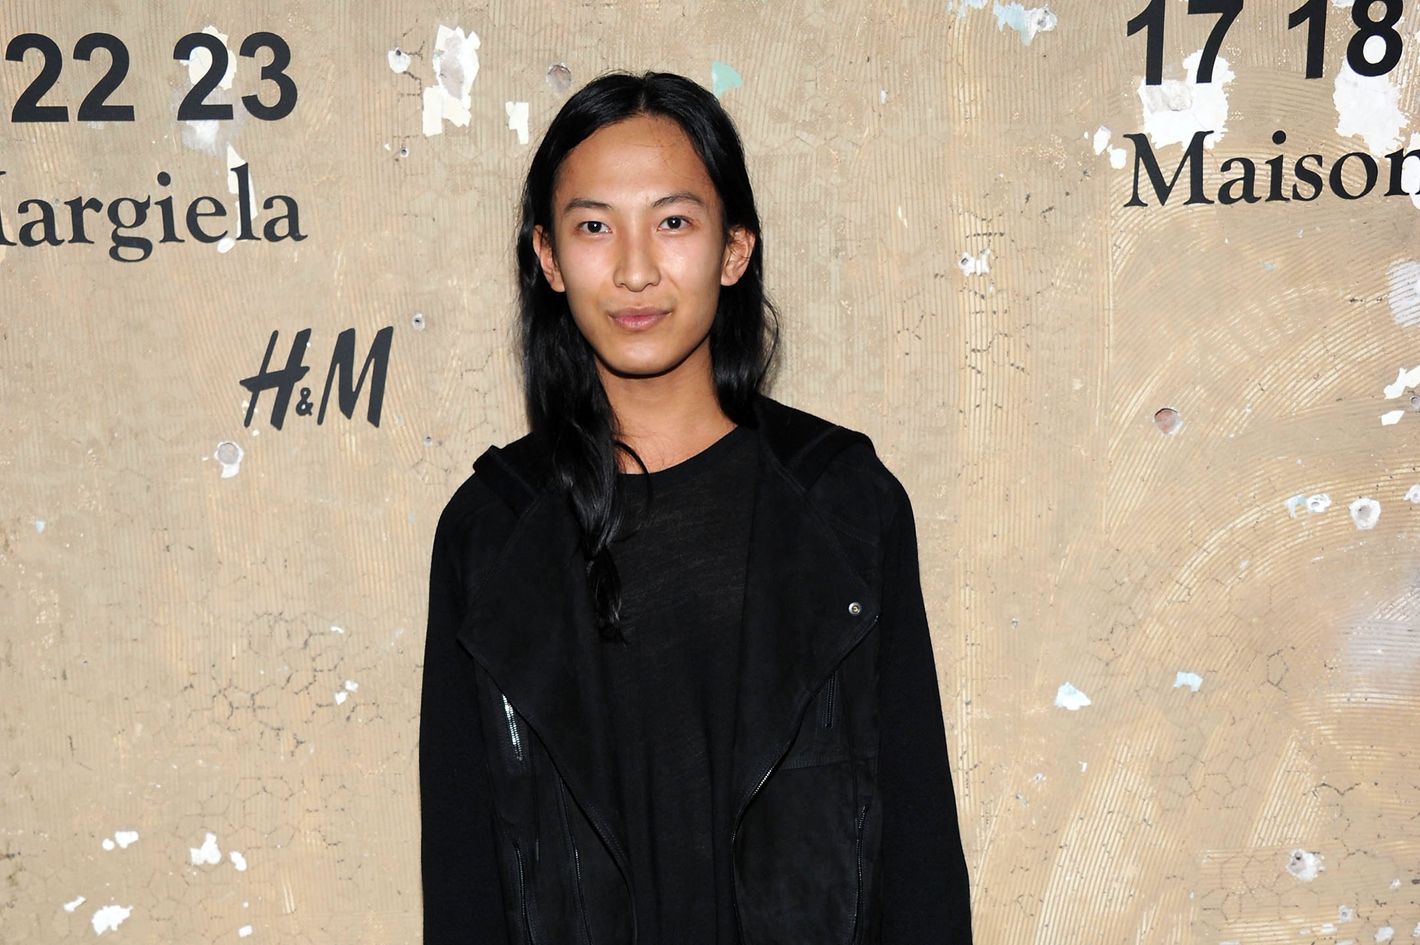 Alexander Wang is confirmed as the new Balenciaga creative